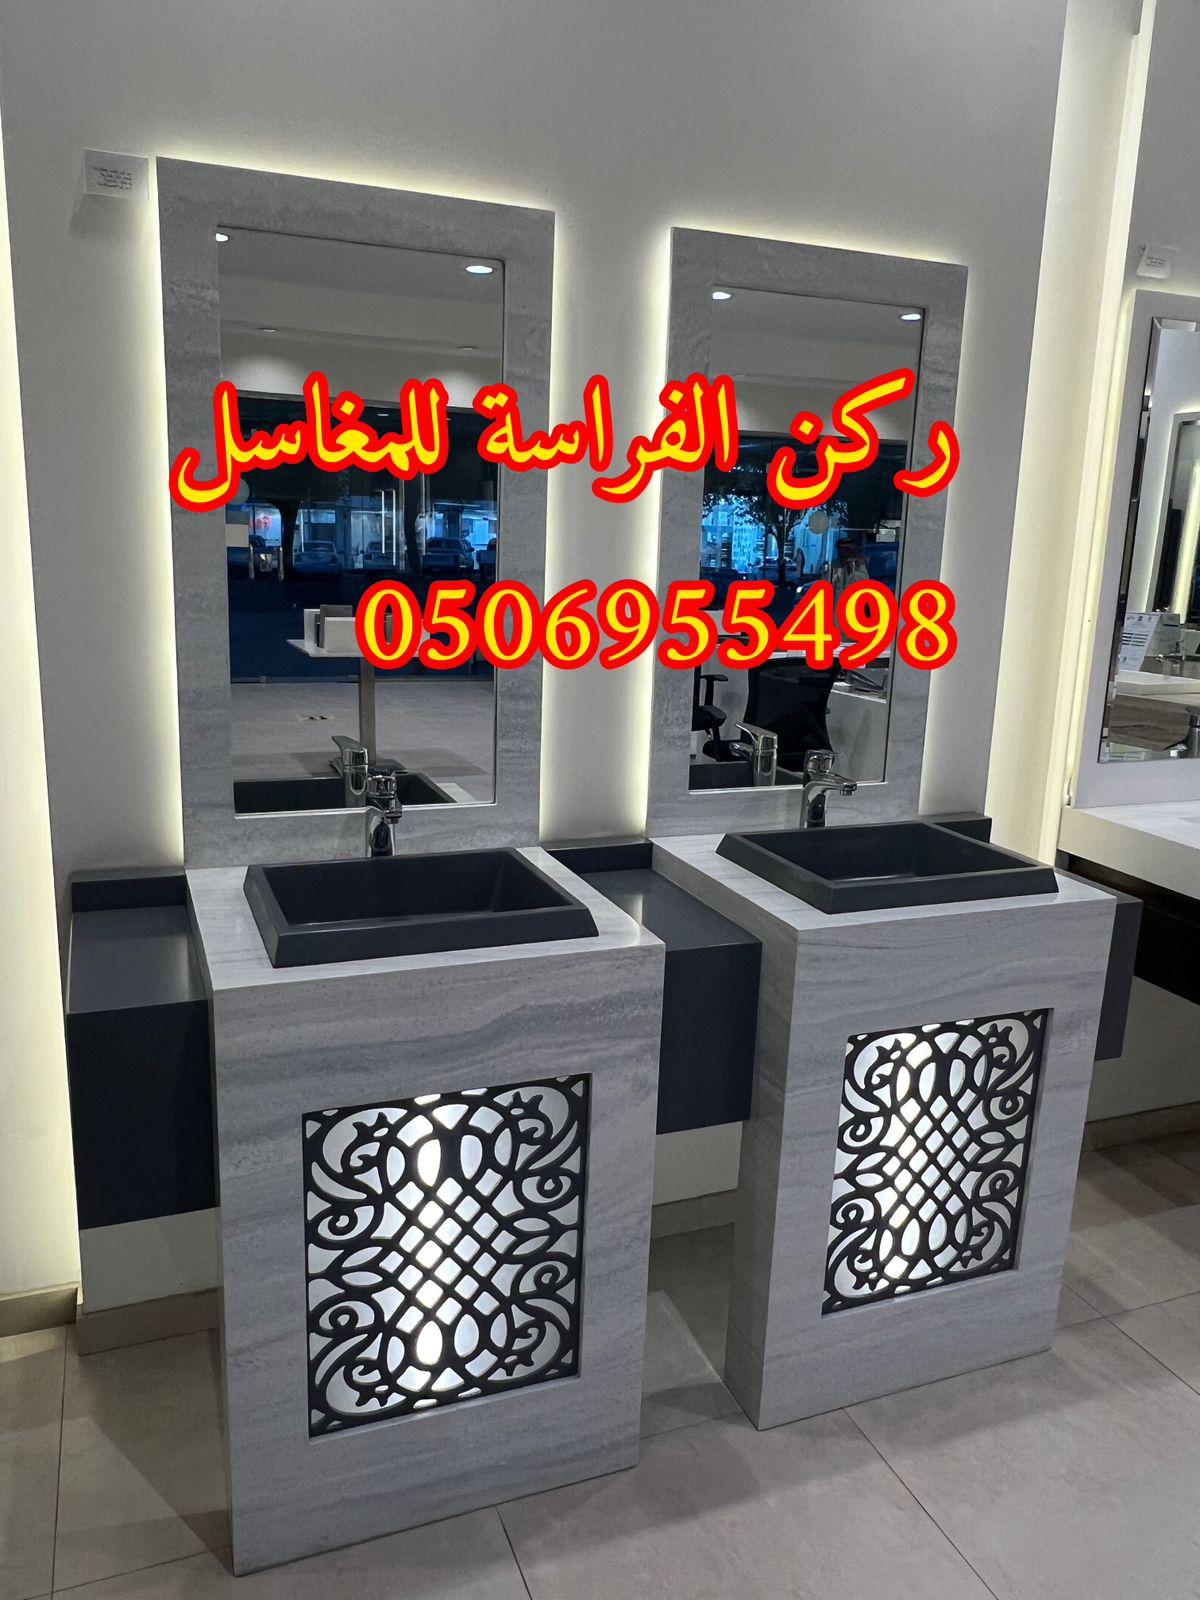 تصاميم مغاسل رخام للمجالس في الرياض,0506955498 313931239